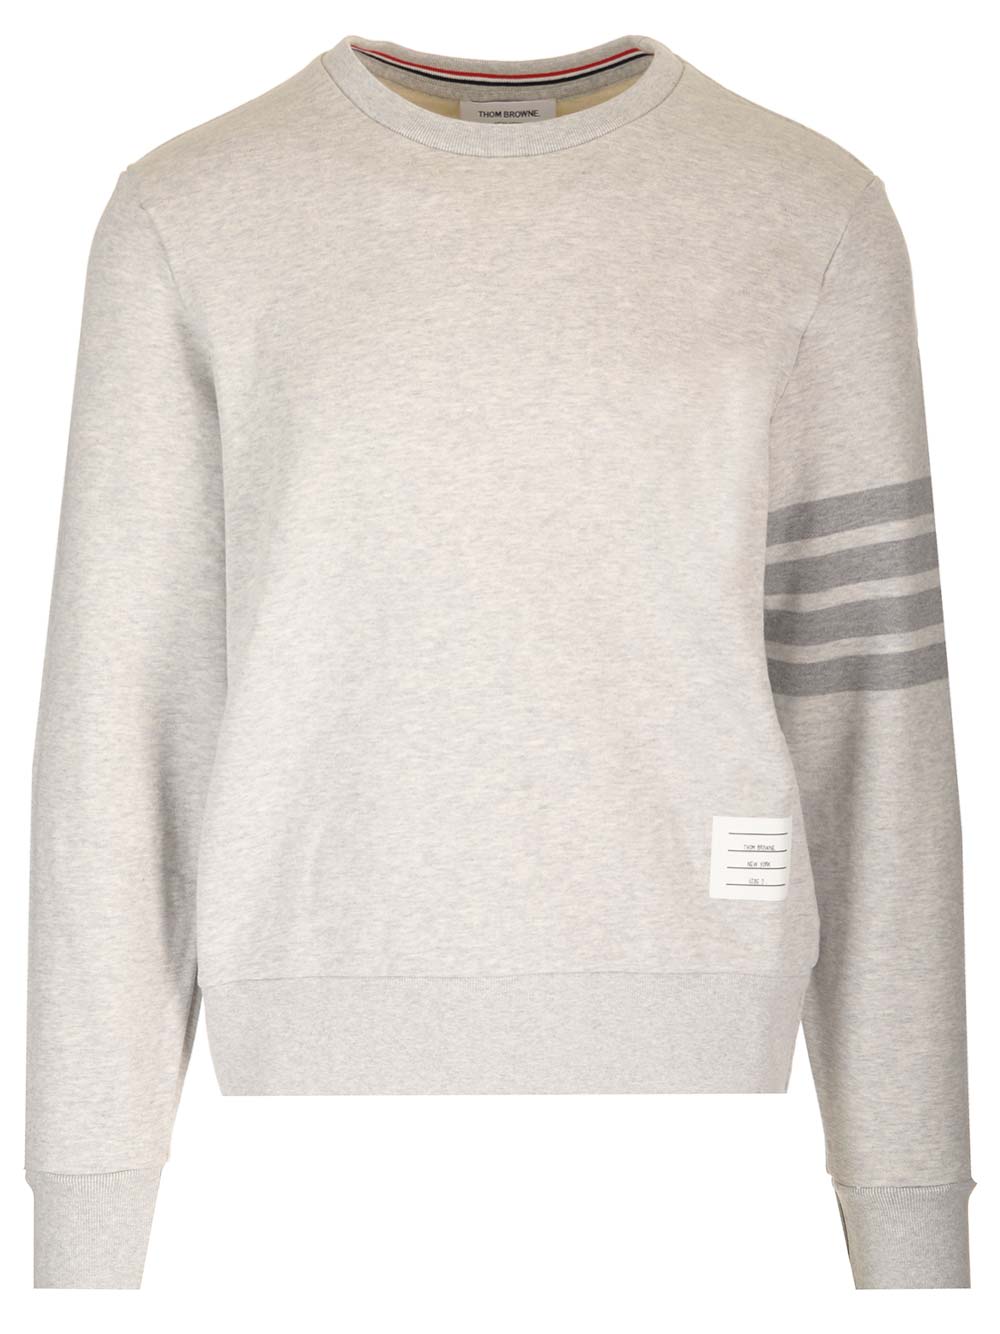 Grey 4-bar Sweatshirt